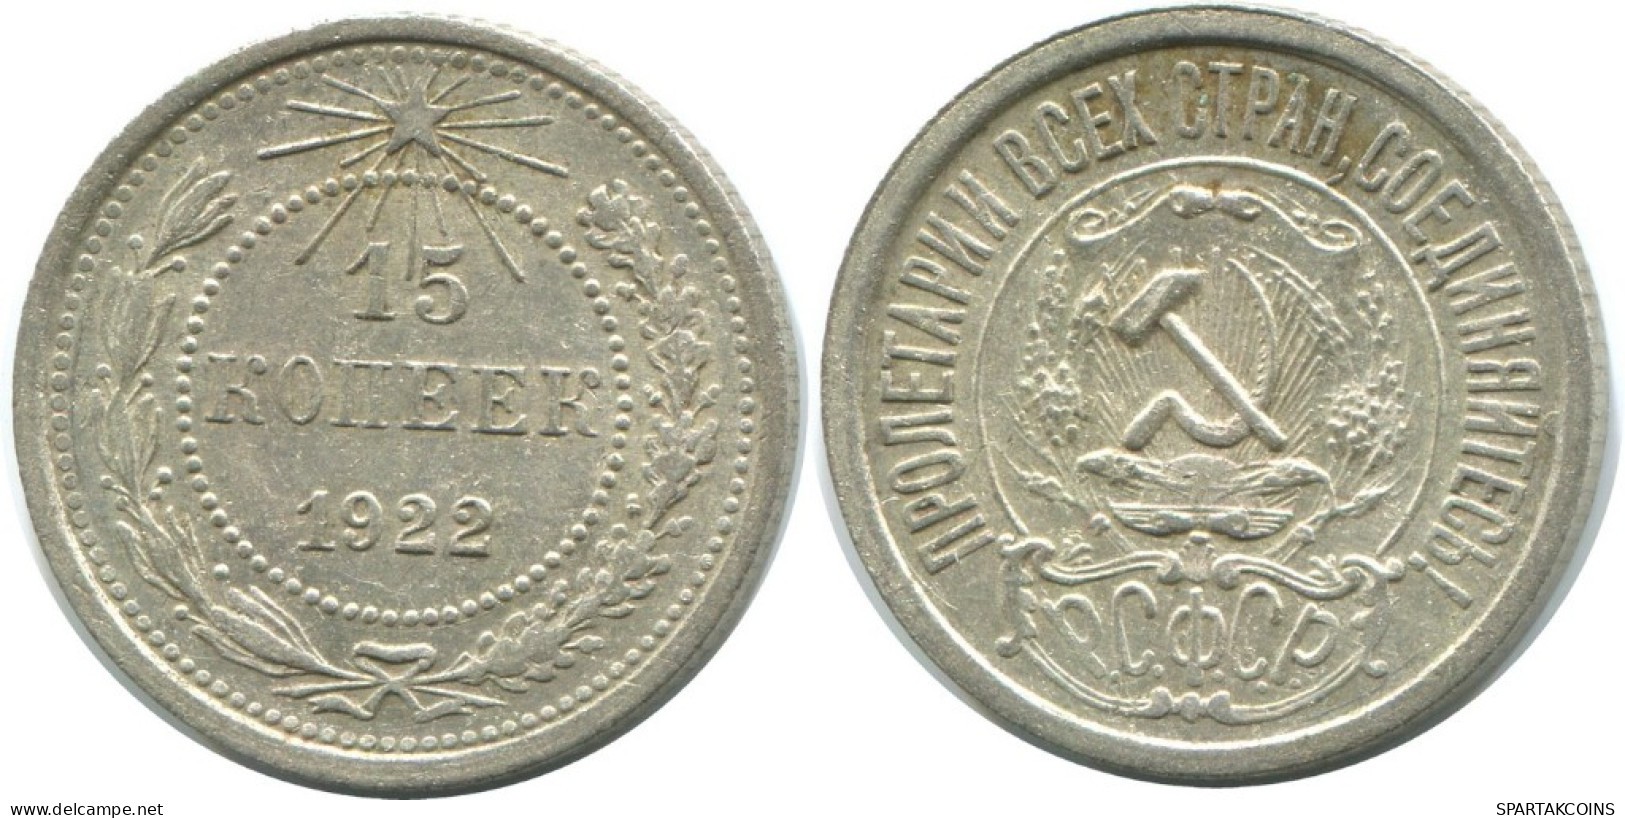 15 KOPEKS 1922 RUSSLAND RUSSIA RSFSR SILBER Münze HIGH GRADE #AF176.4.D.A - Russia